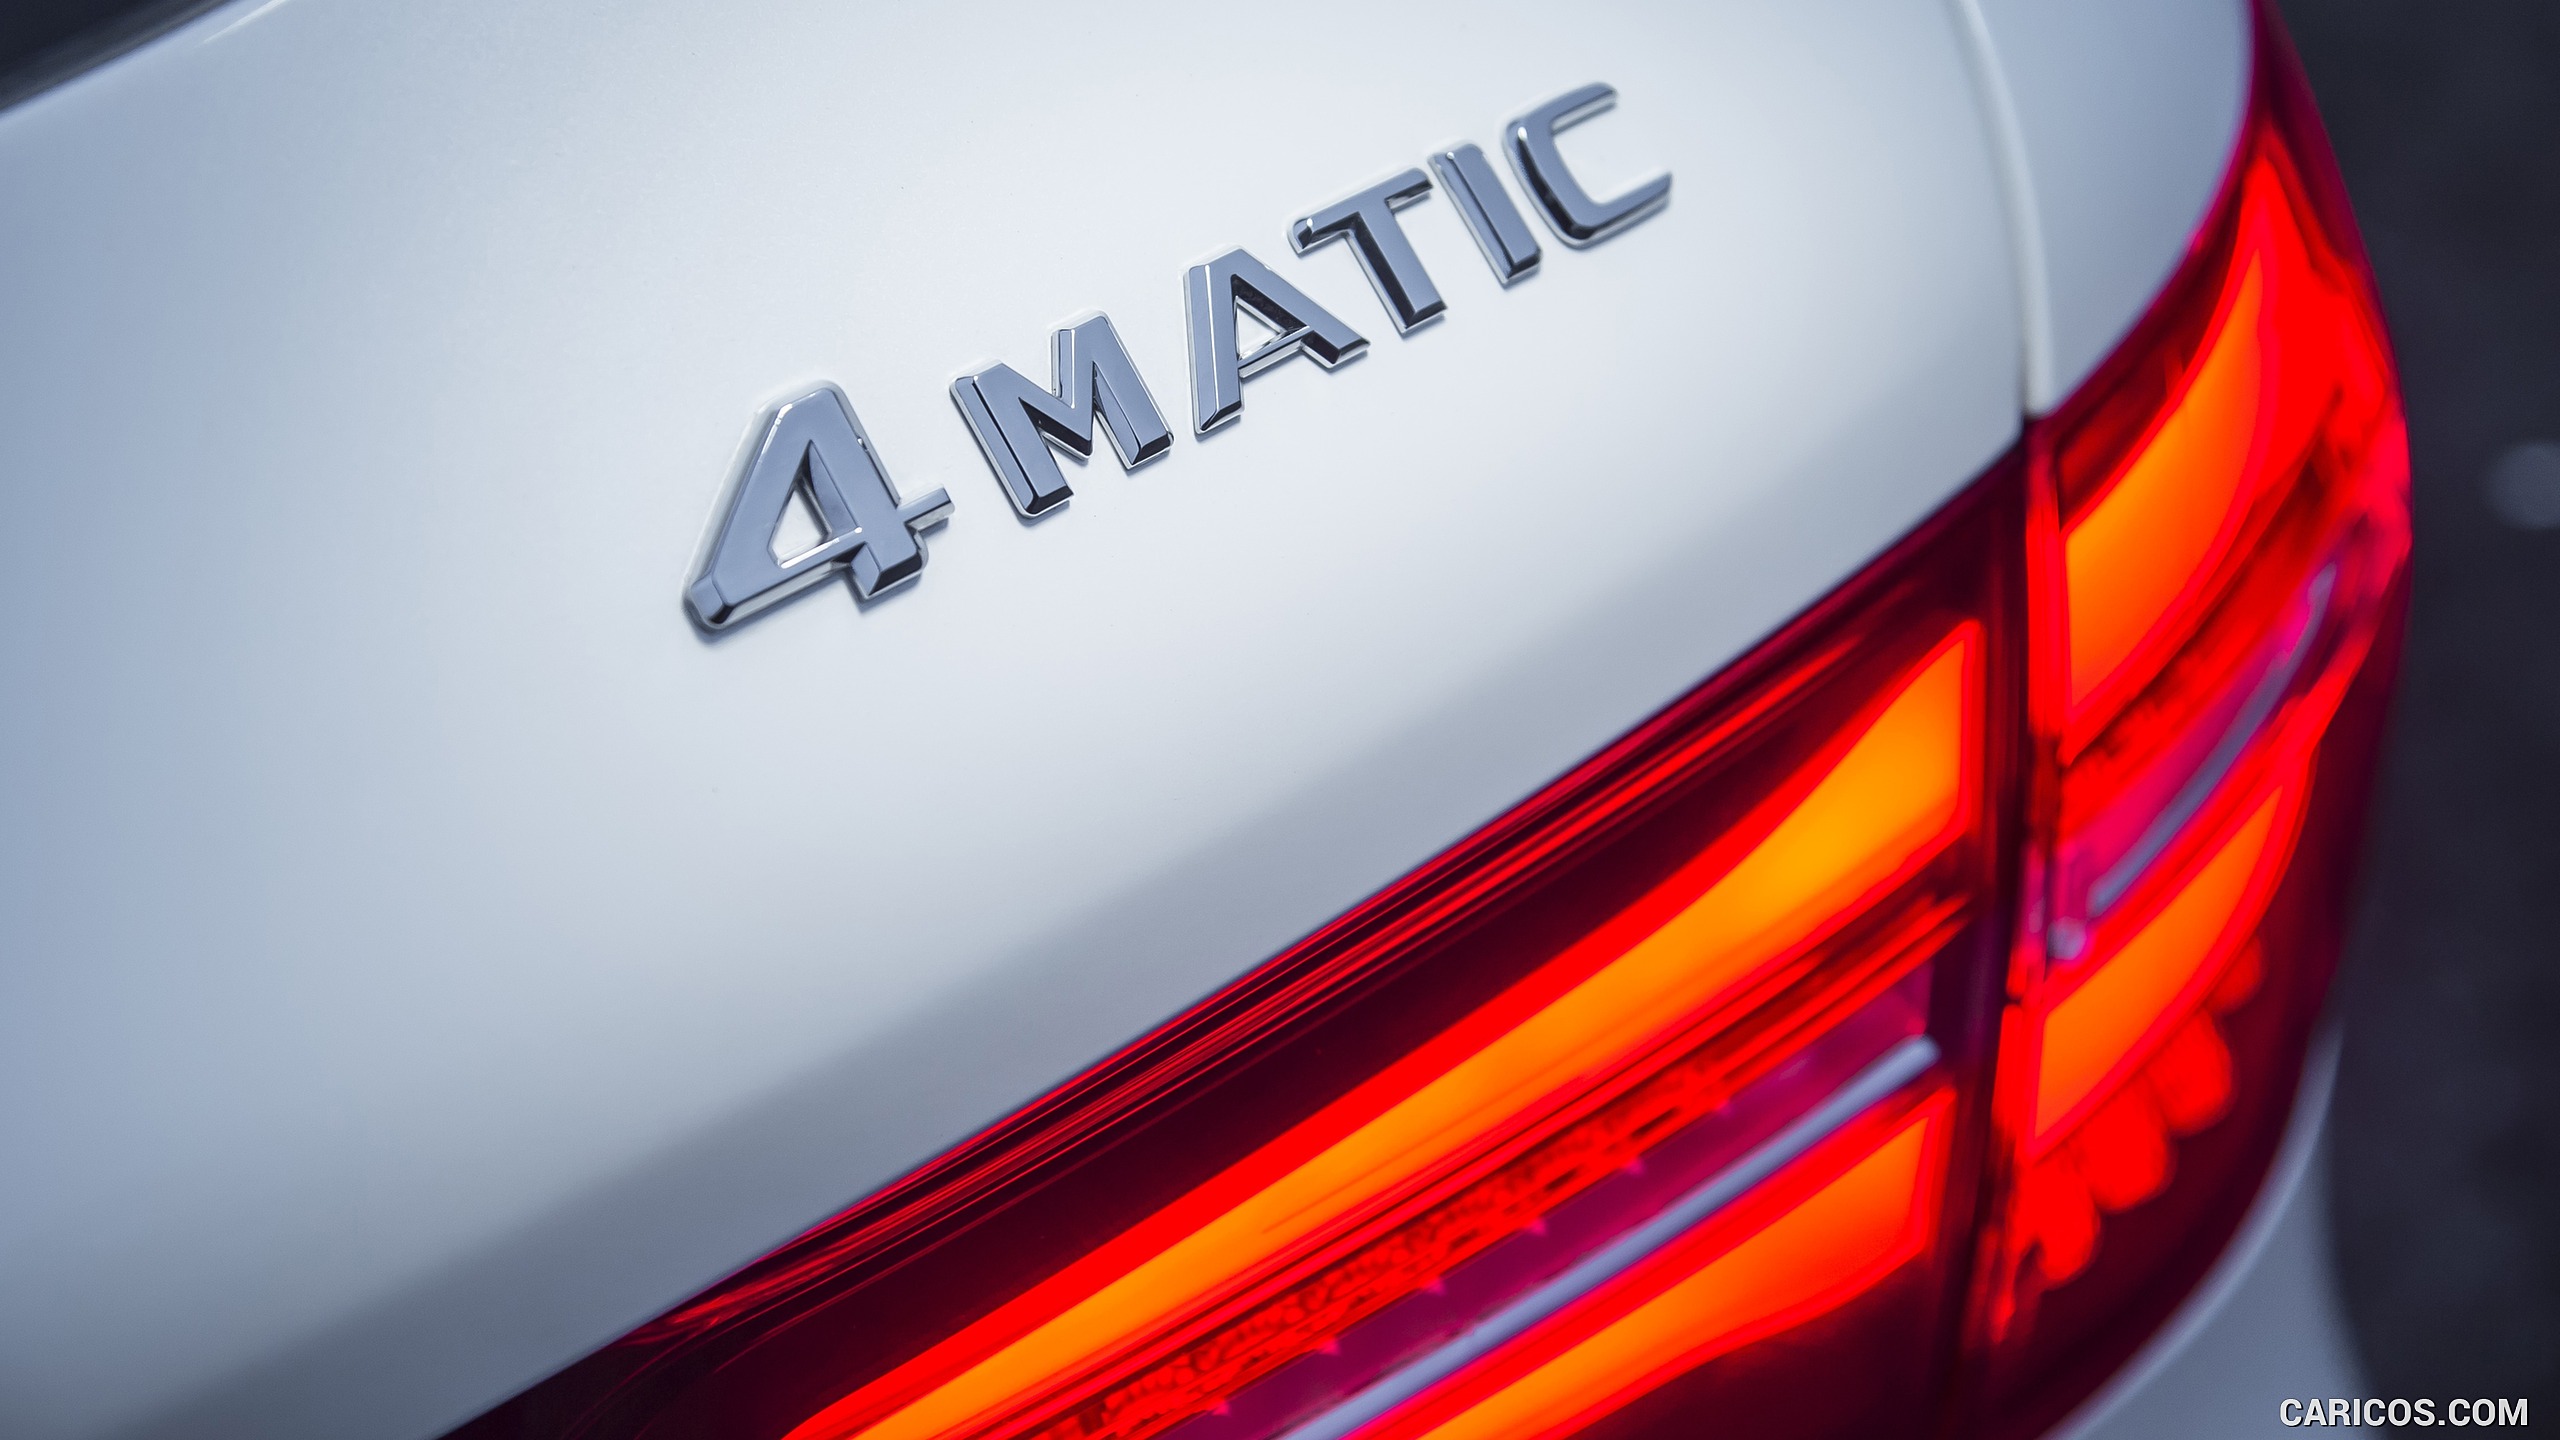 2016 Mercedes-Benz GLC 250d 4MATIC AMG Line (UK-Spec) - Badge, #88 of 130